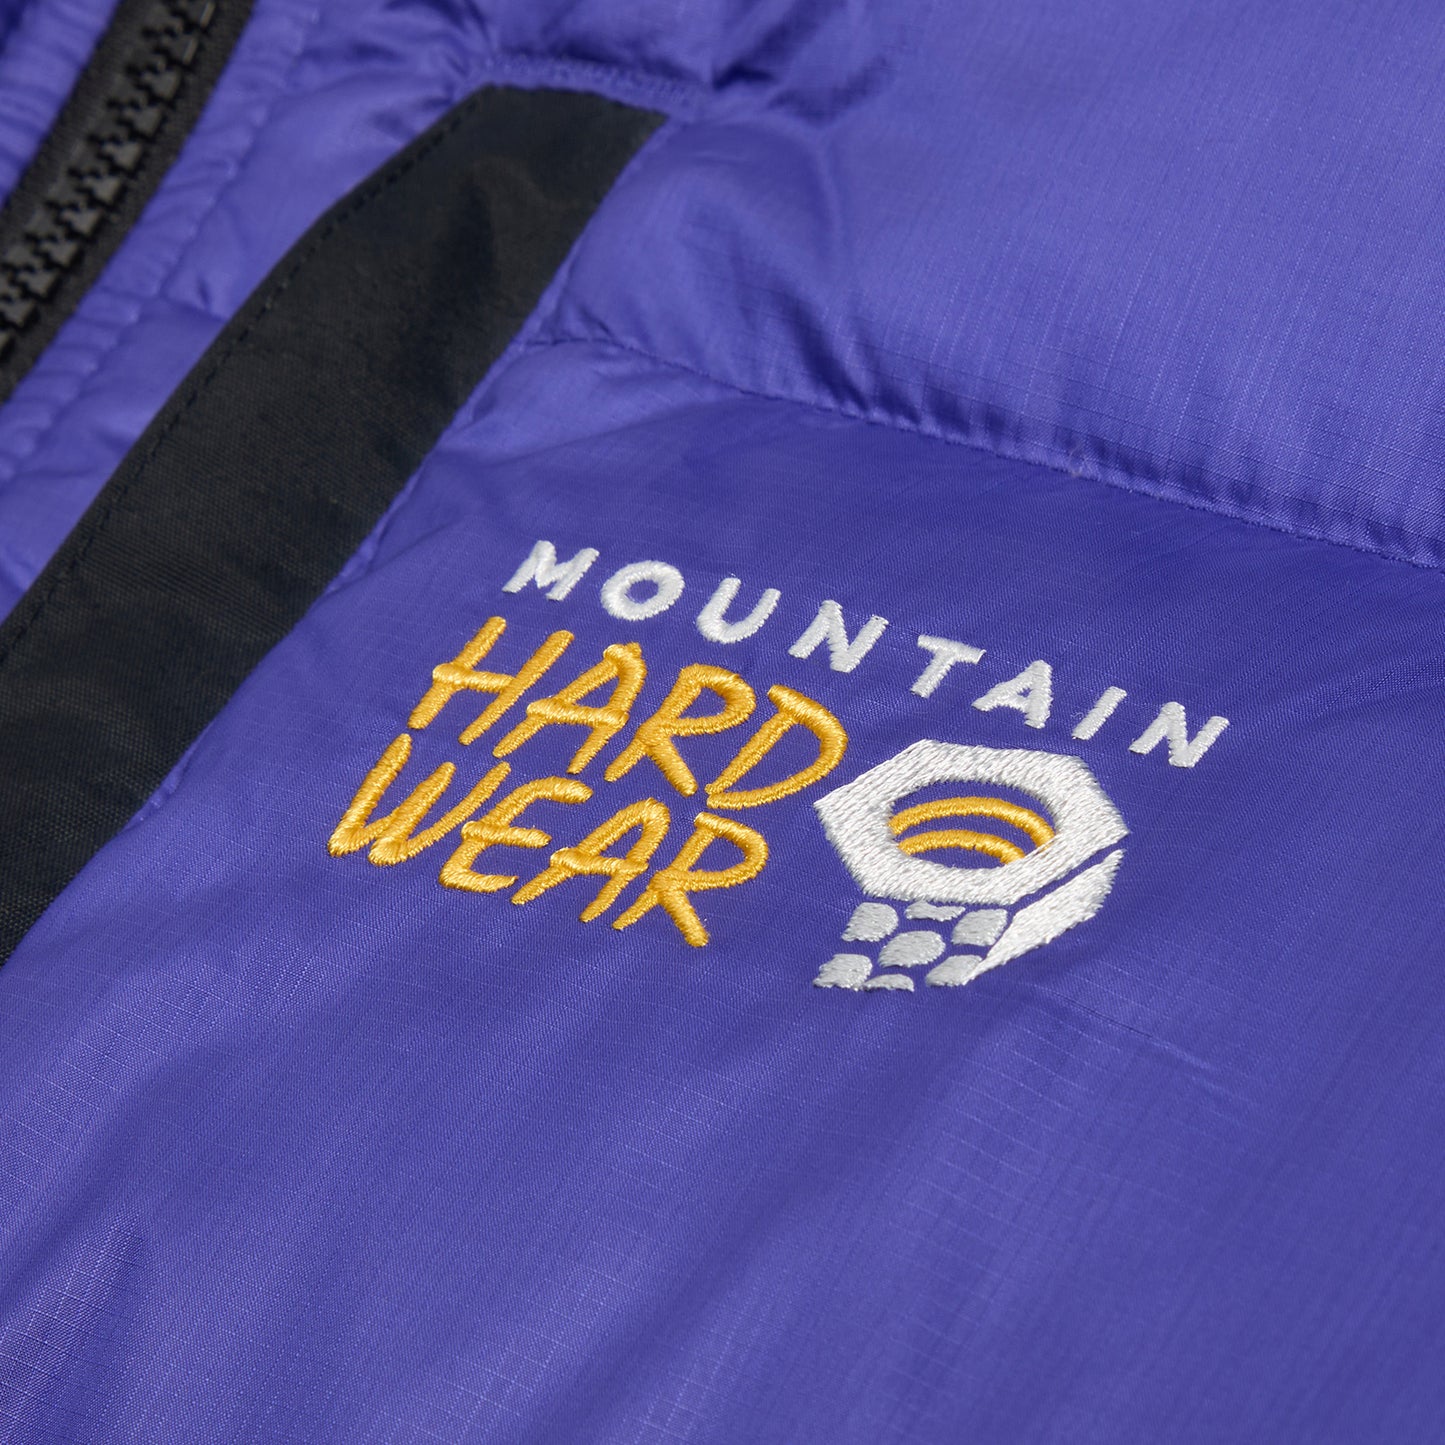 Mountain Hardware Subzero™ Down Jacket Reissue (Klein Blue)